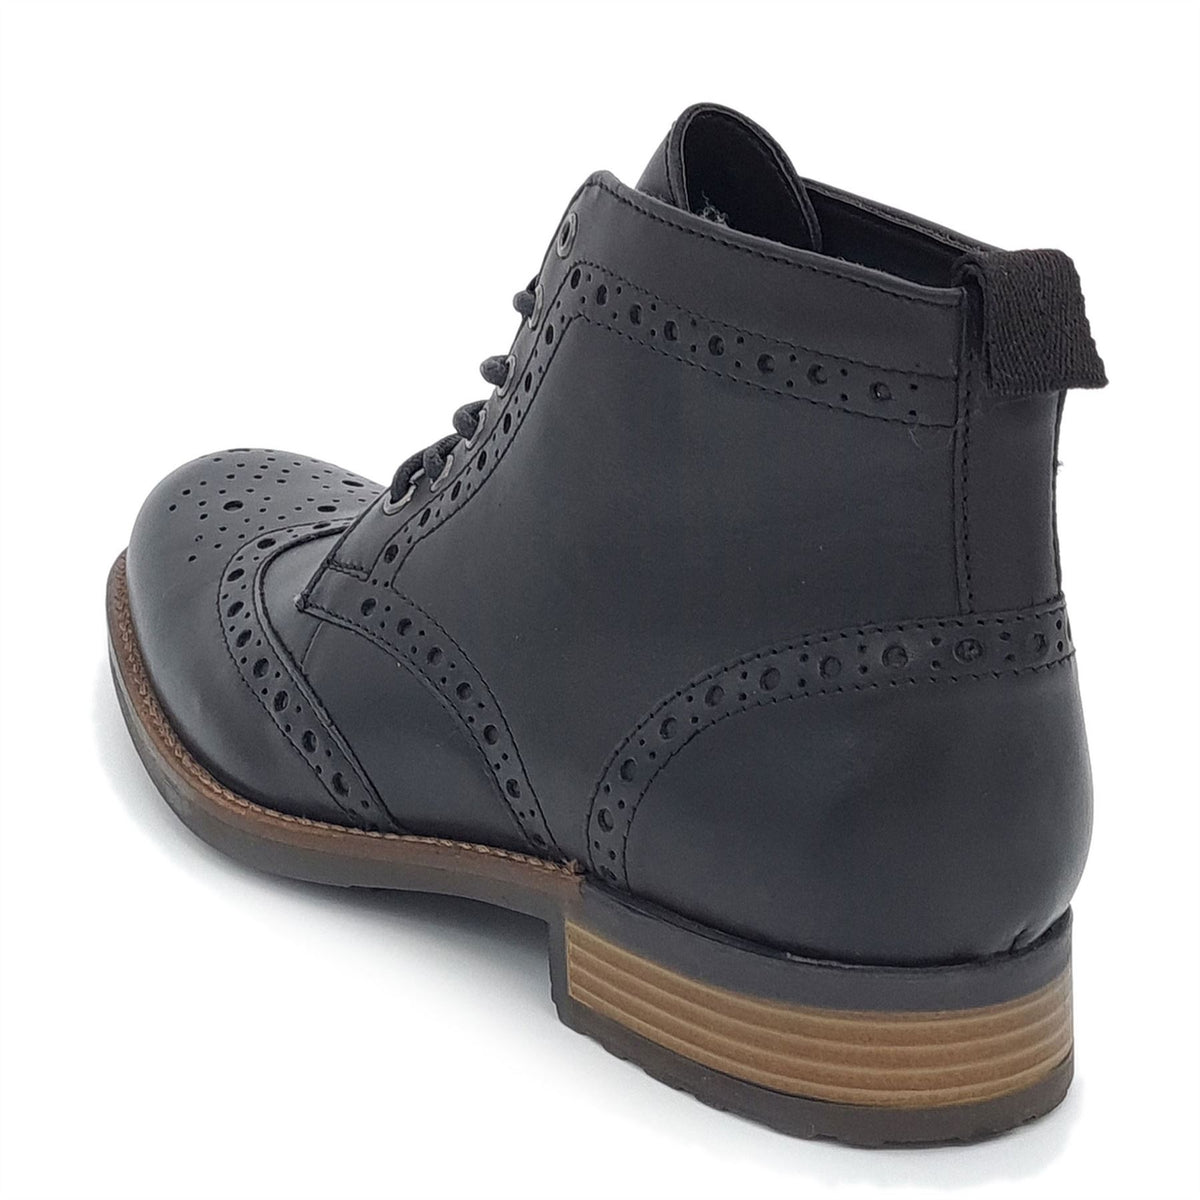 HX London Kingston Brogue Lace Up Leather Boots